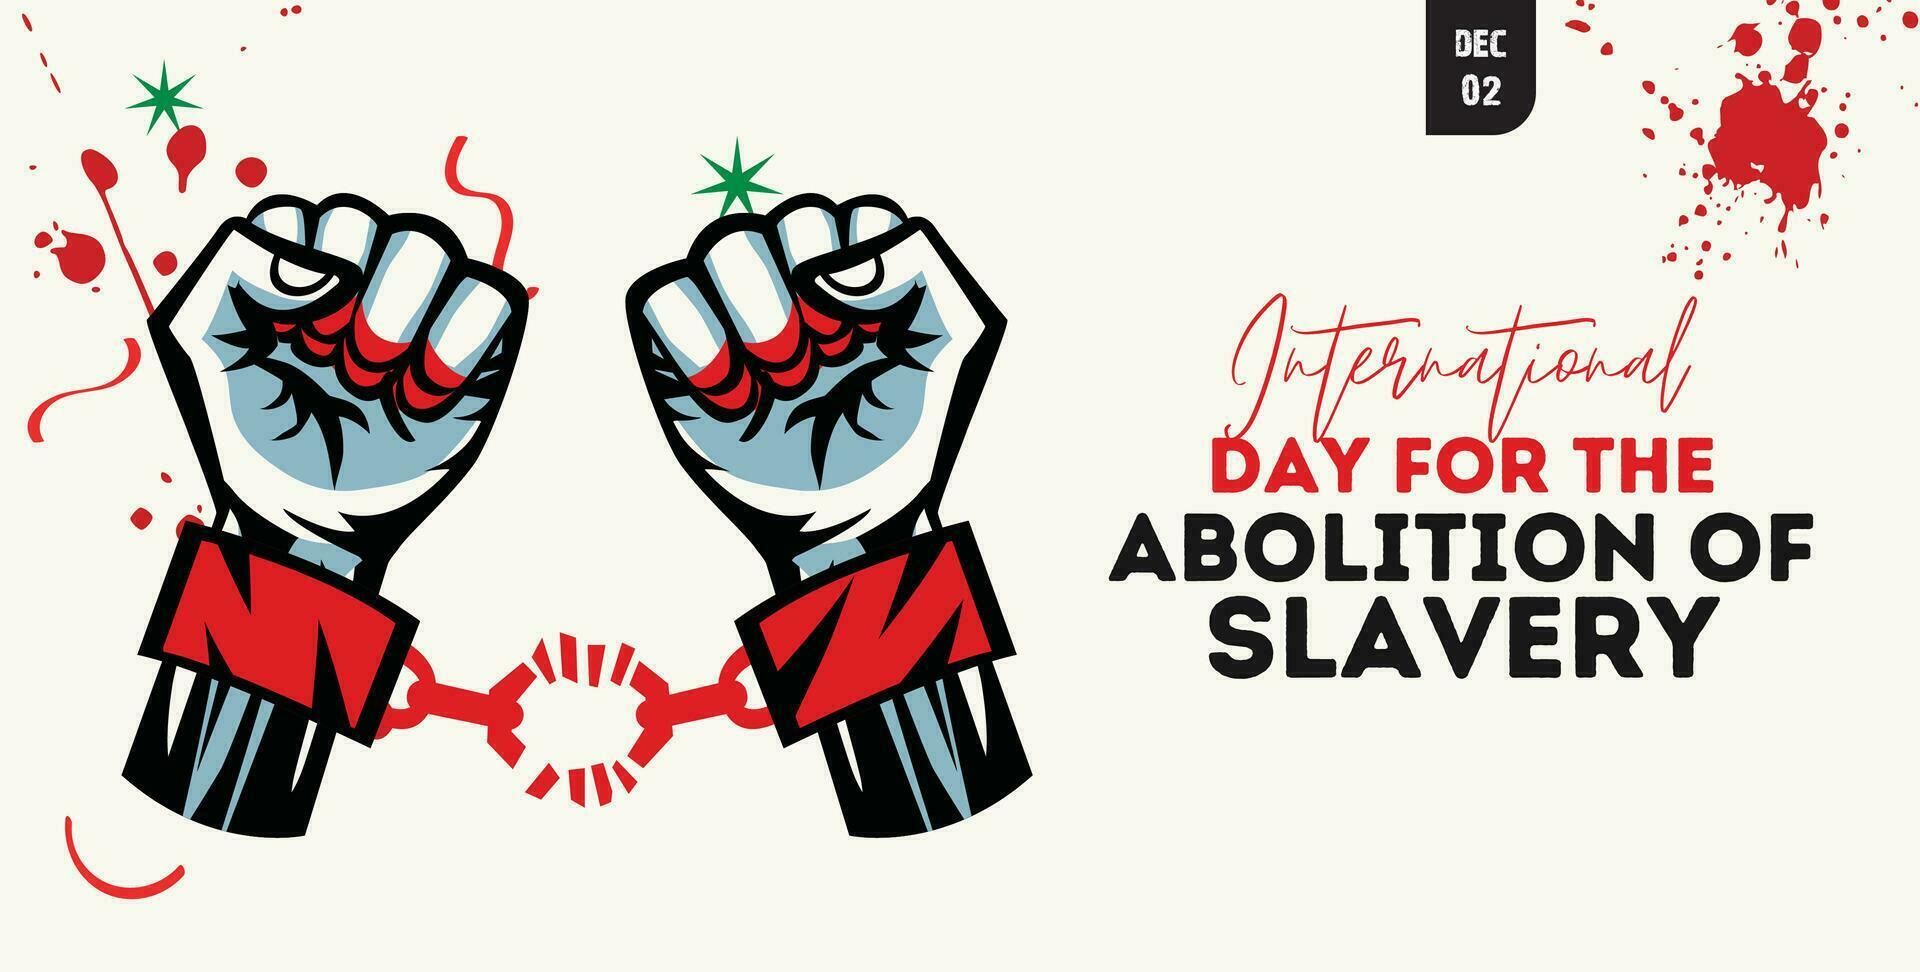 international journée pour le abolition de esclavage. décembre 2. avec cassé passer les menottes bats toi illustration vecteur